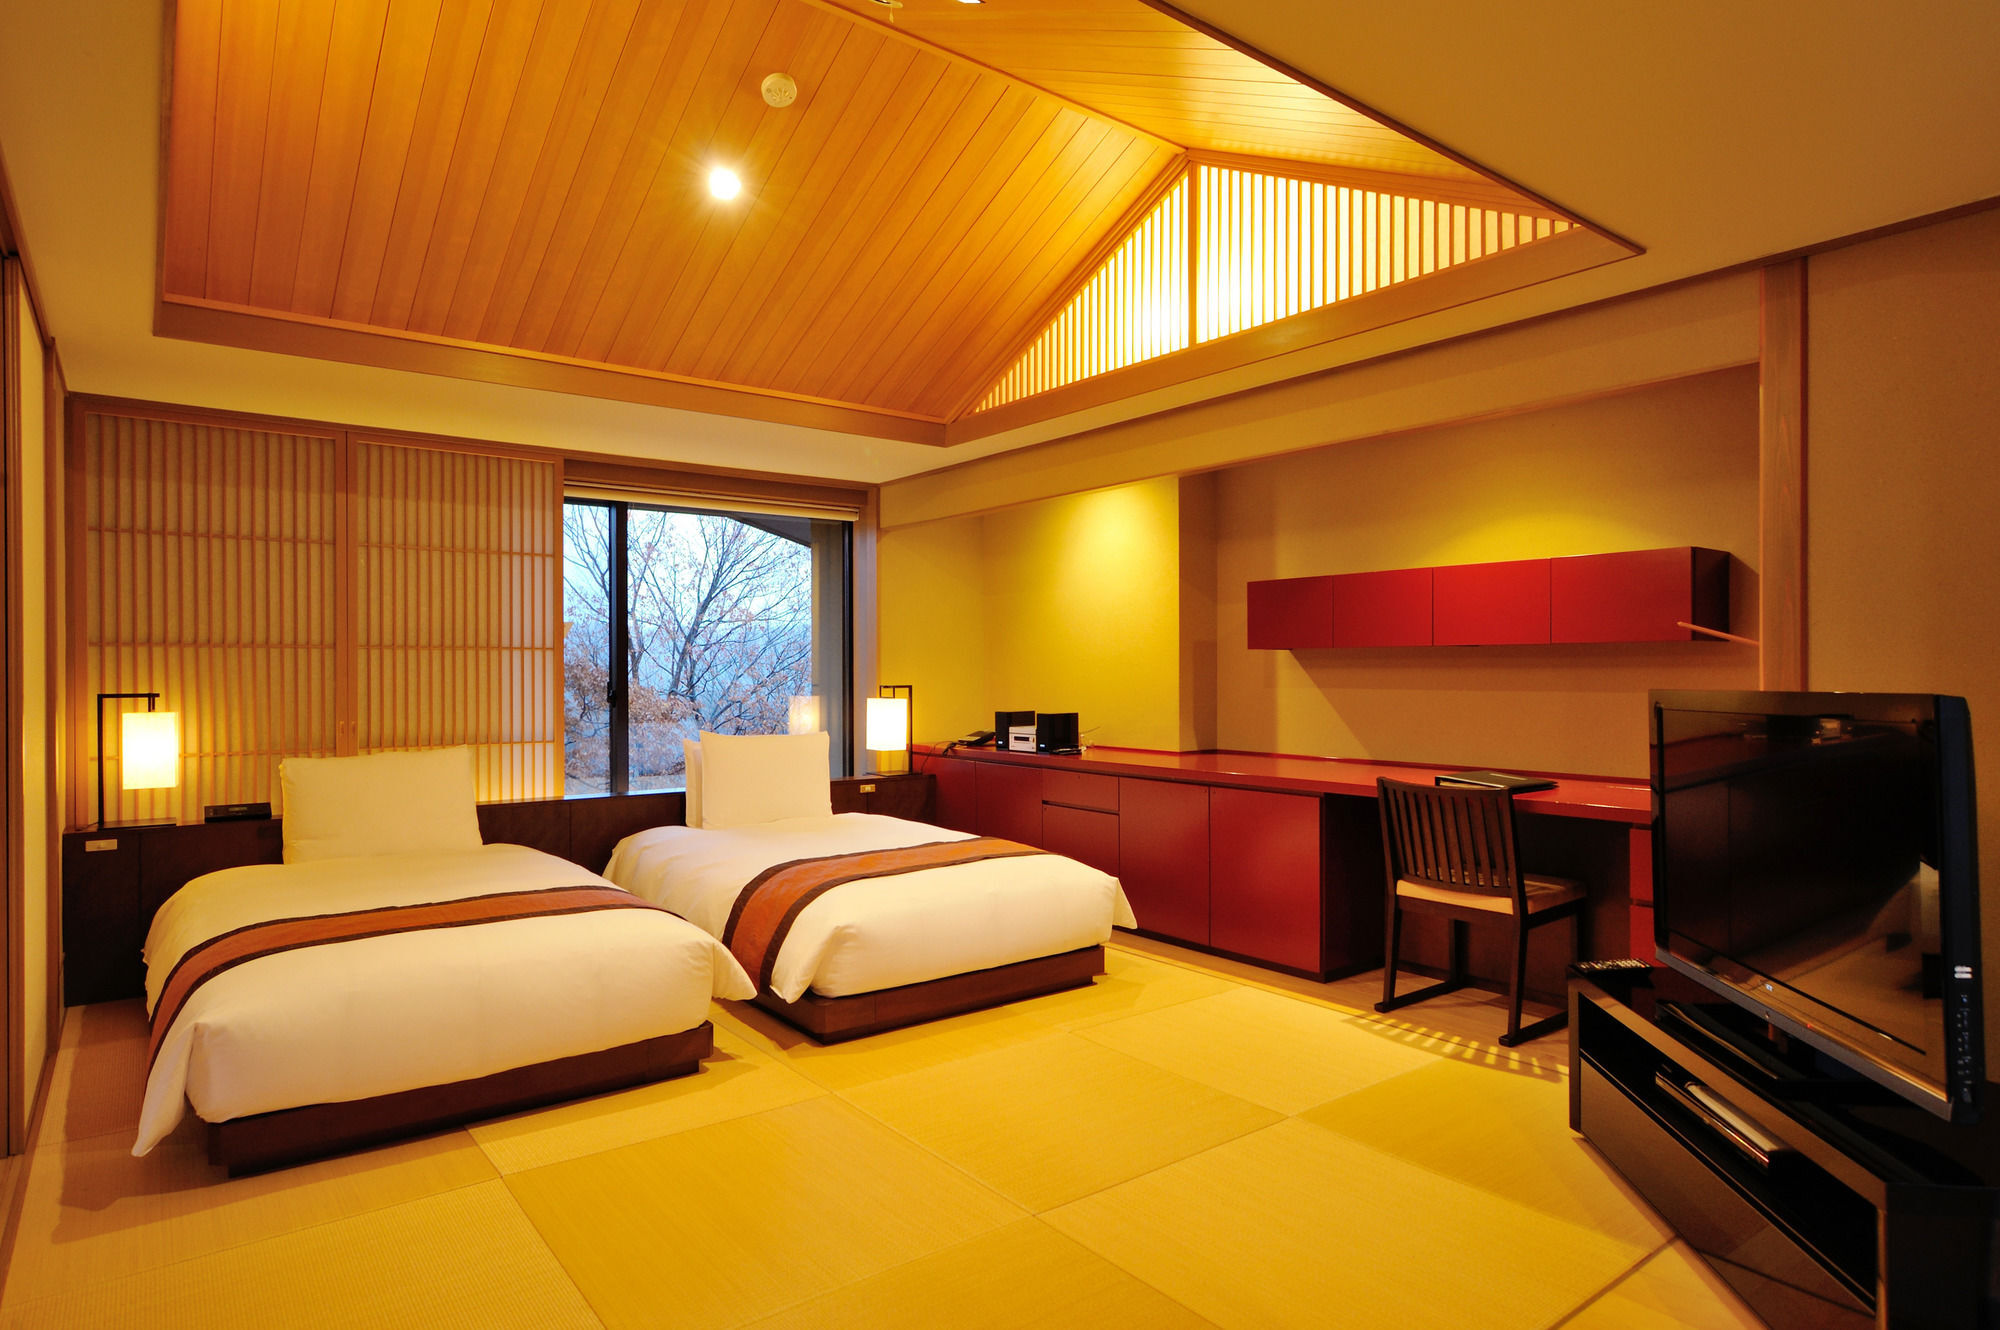 Hotel 竹泉荘 Chikusenso Onsen Zao Zewnętrze zdjęcie